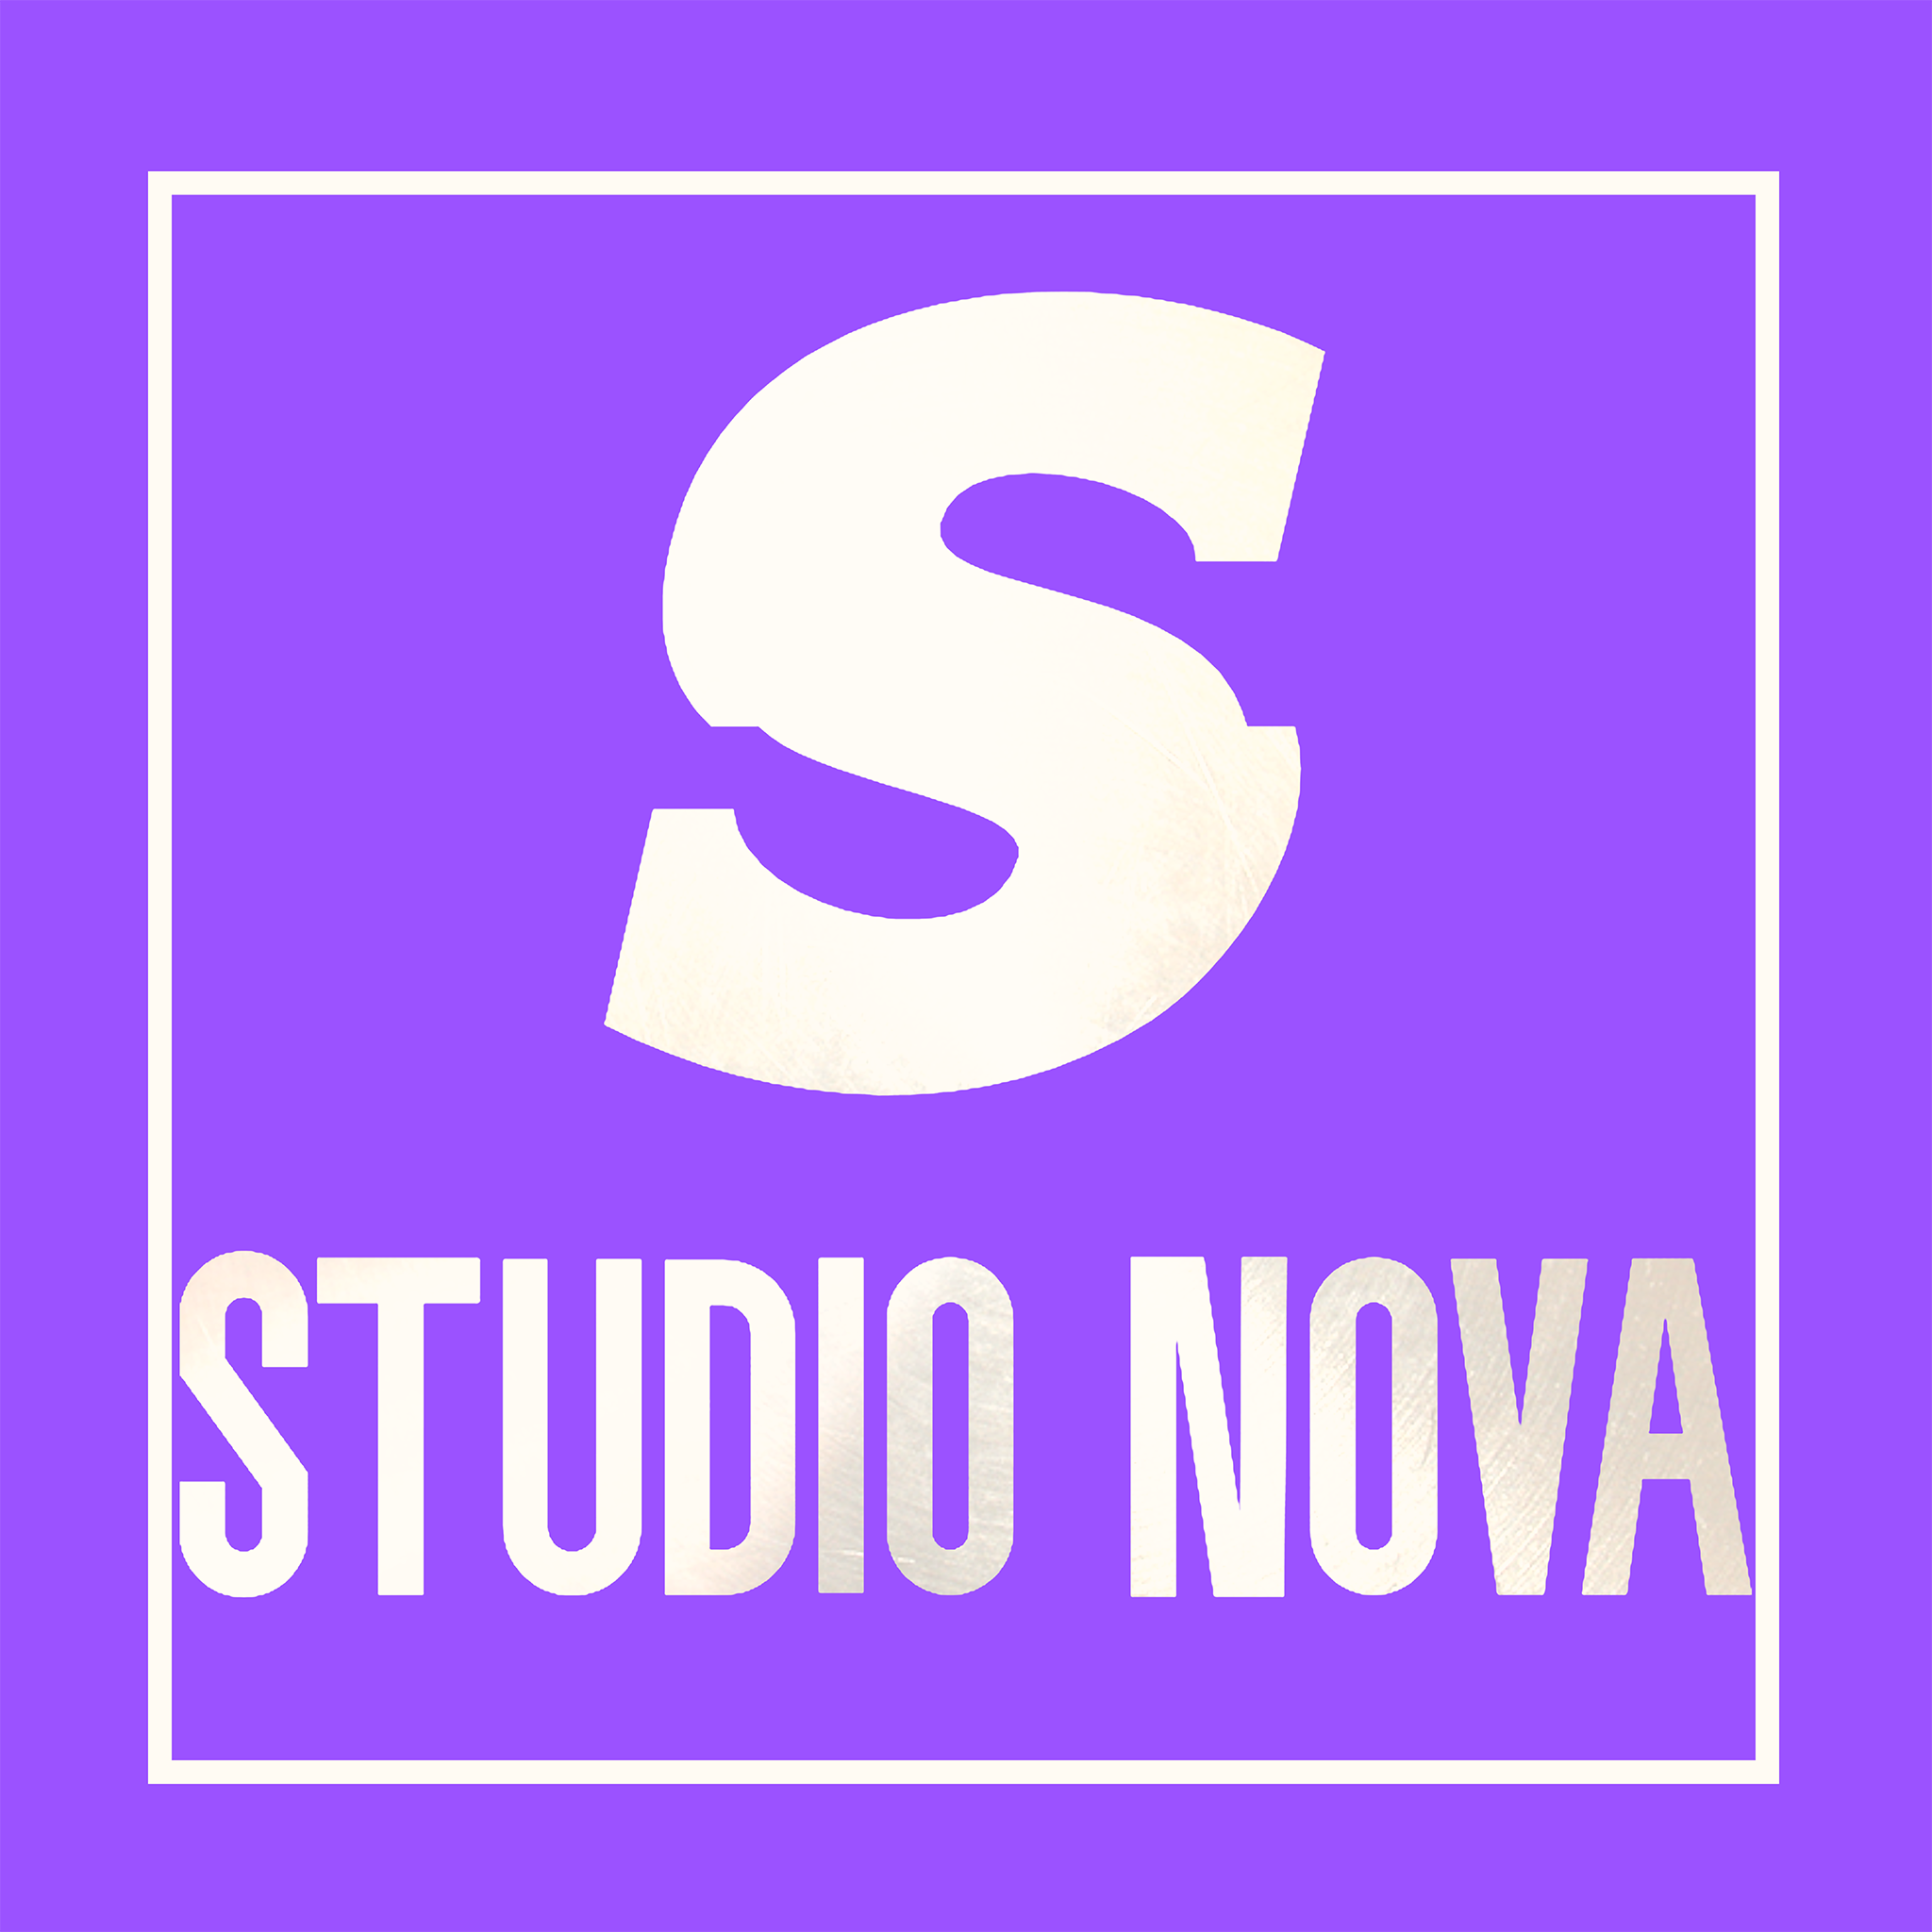 Studio Nova Mainstore!